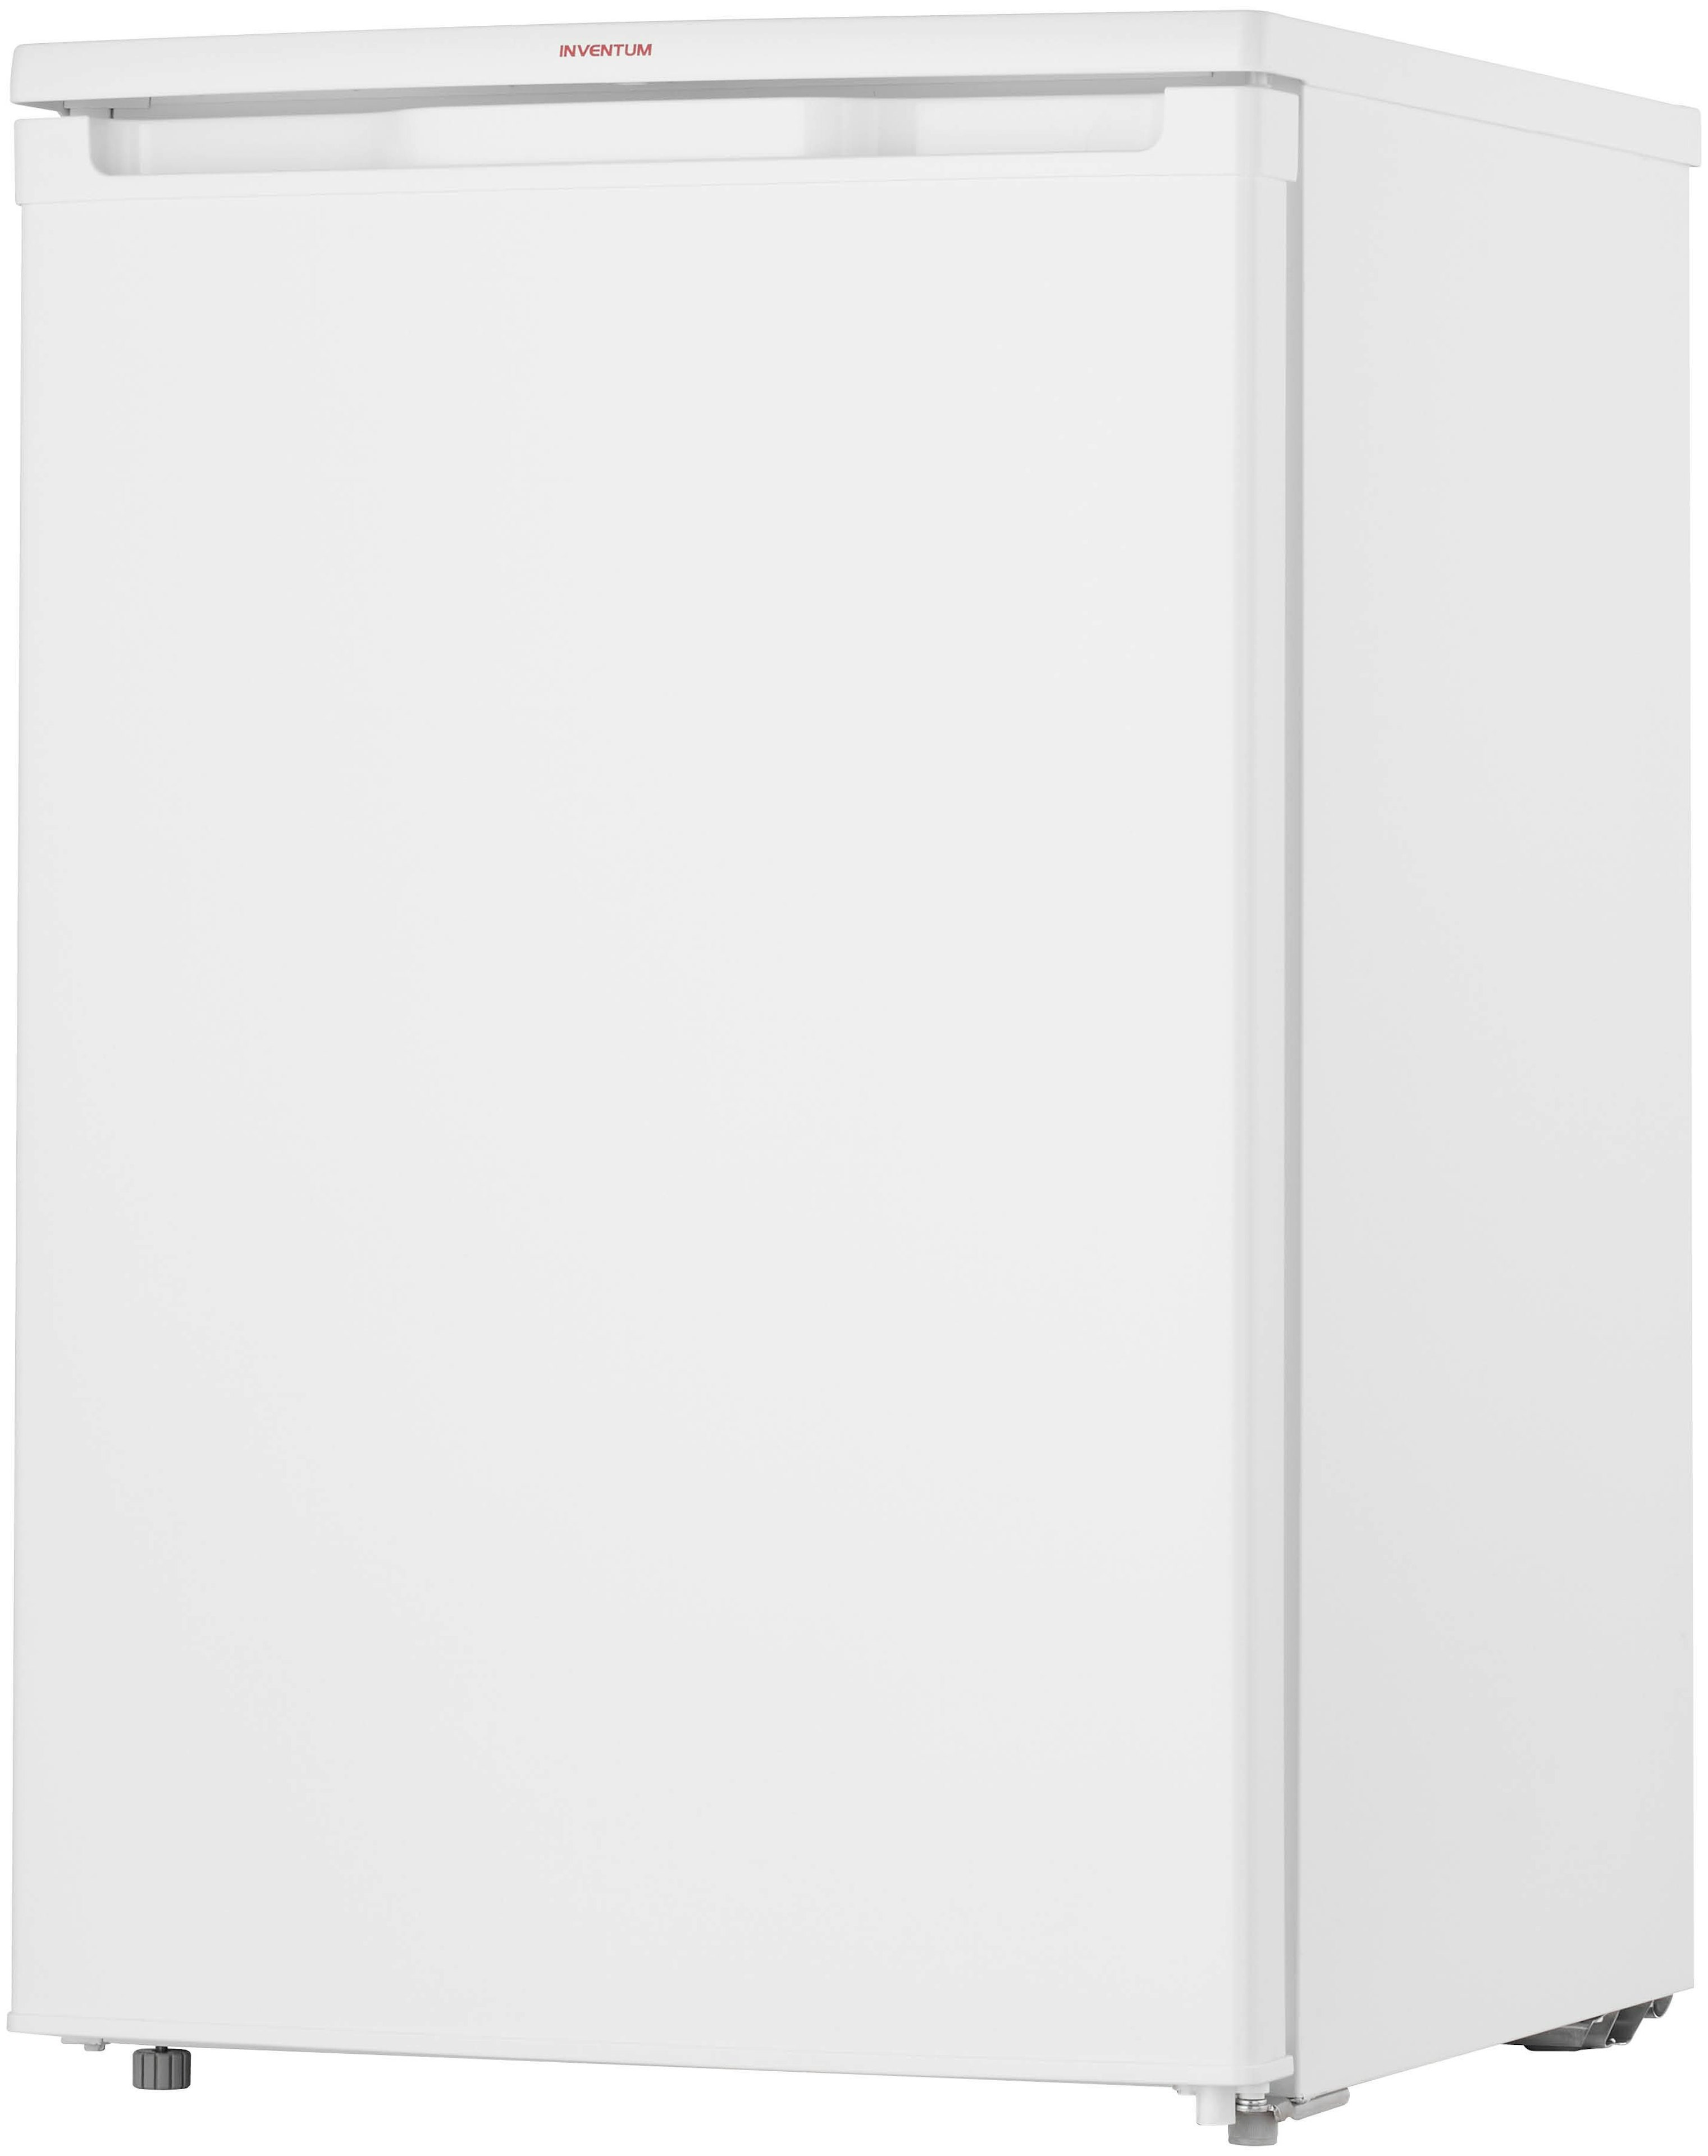 Inventum KK550 vrijstaand koelkast afbeelding 5